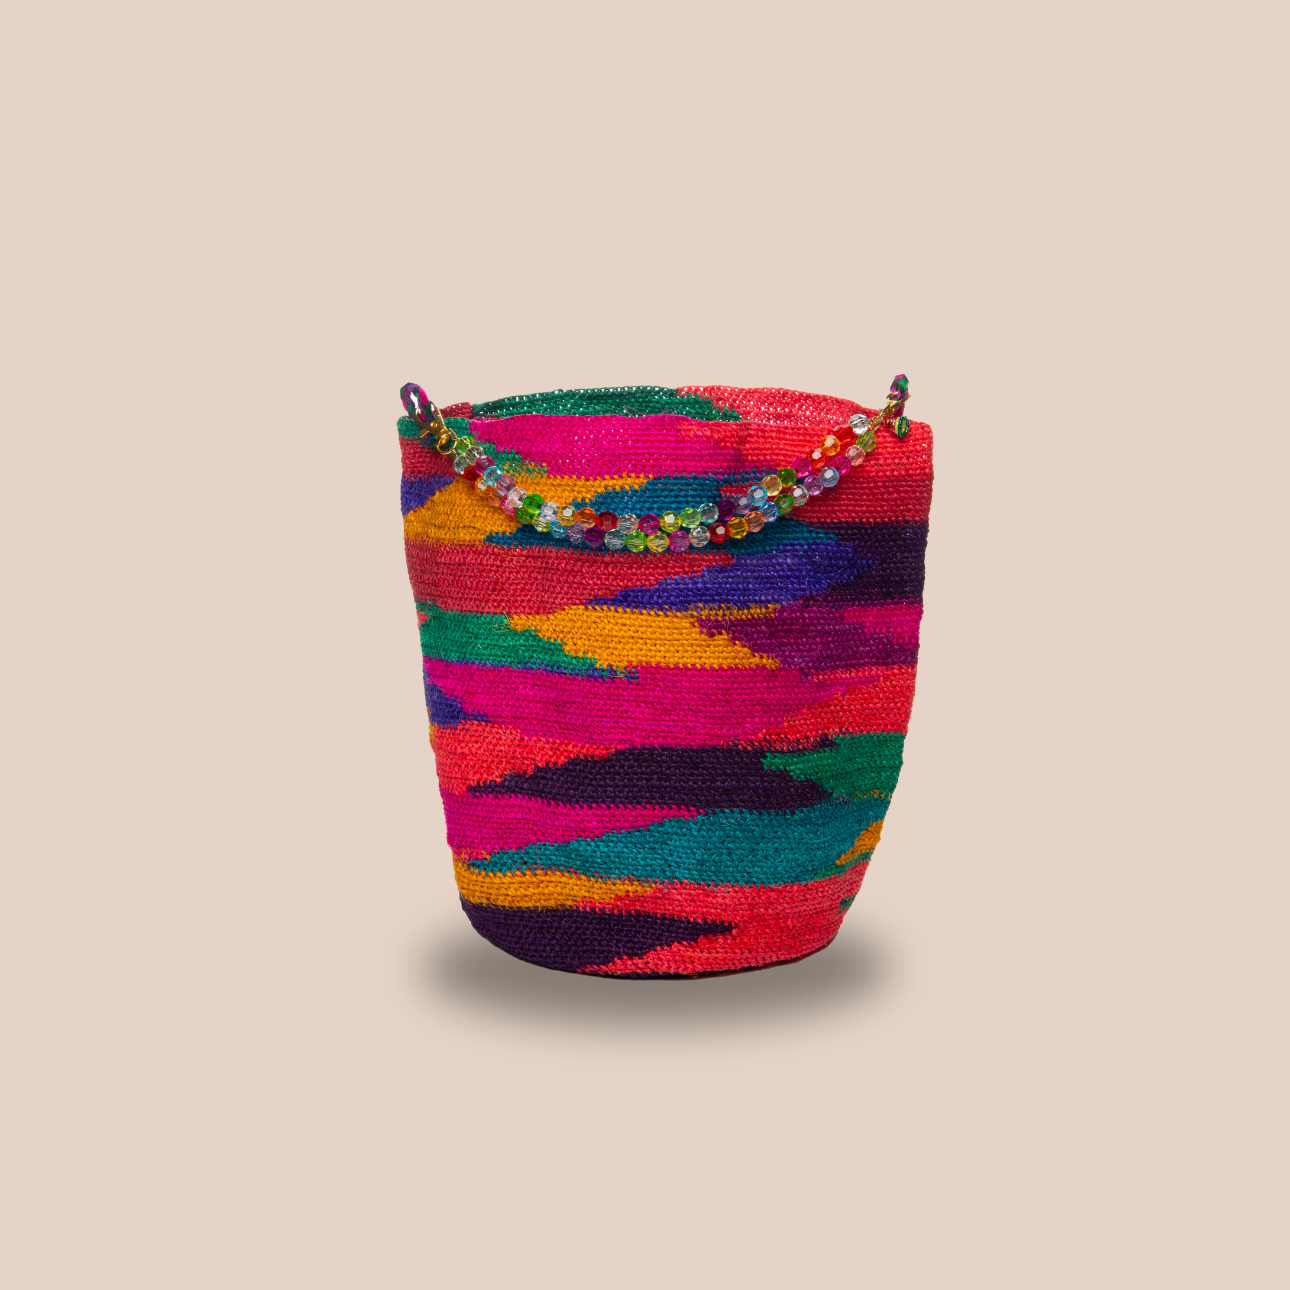  Image du sac princesa, anse motif pasteque de Maison Badigo, sac en fibres de cactus multicolore unique et tendance